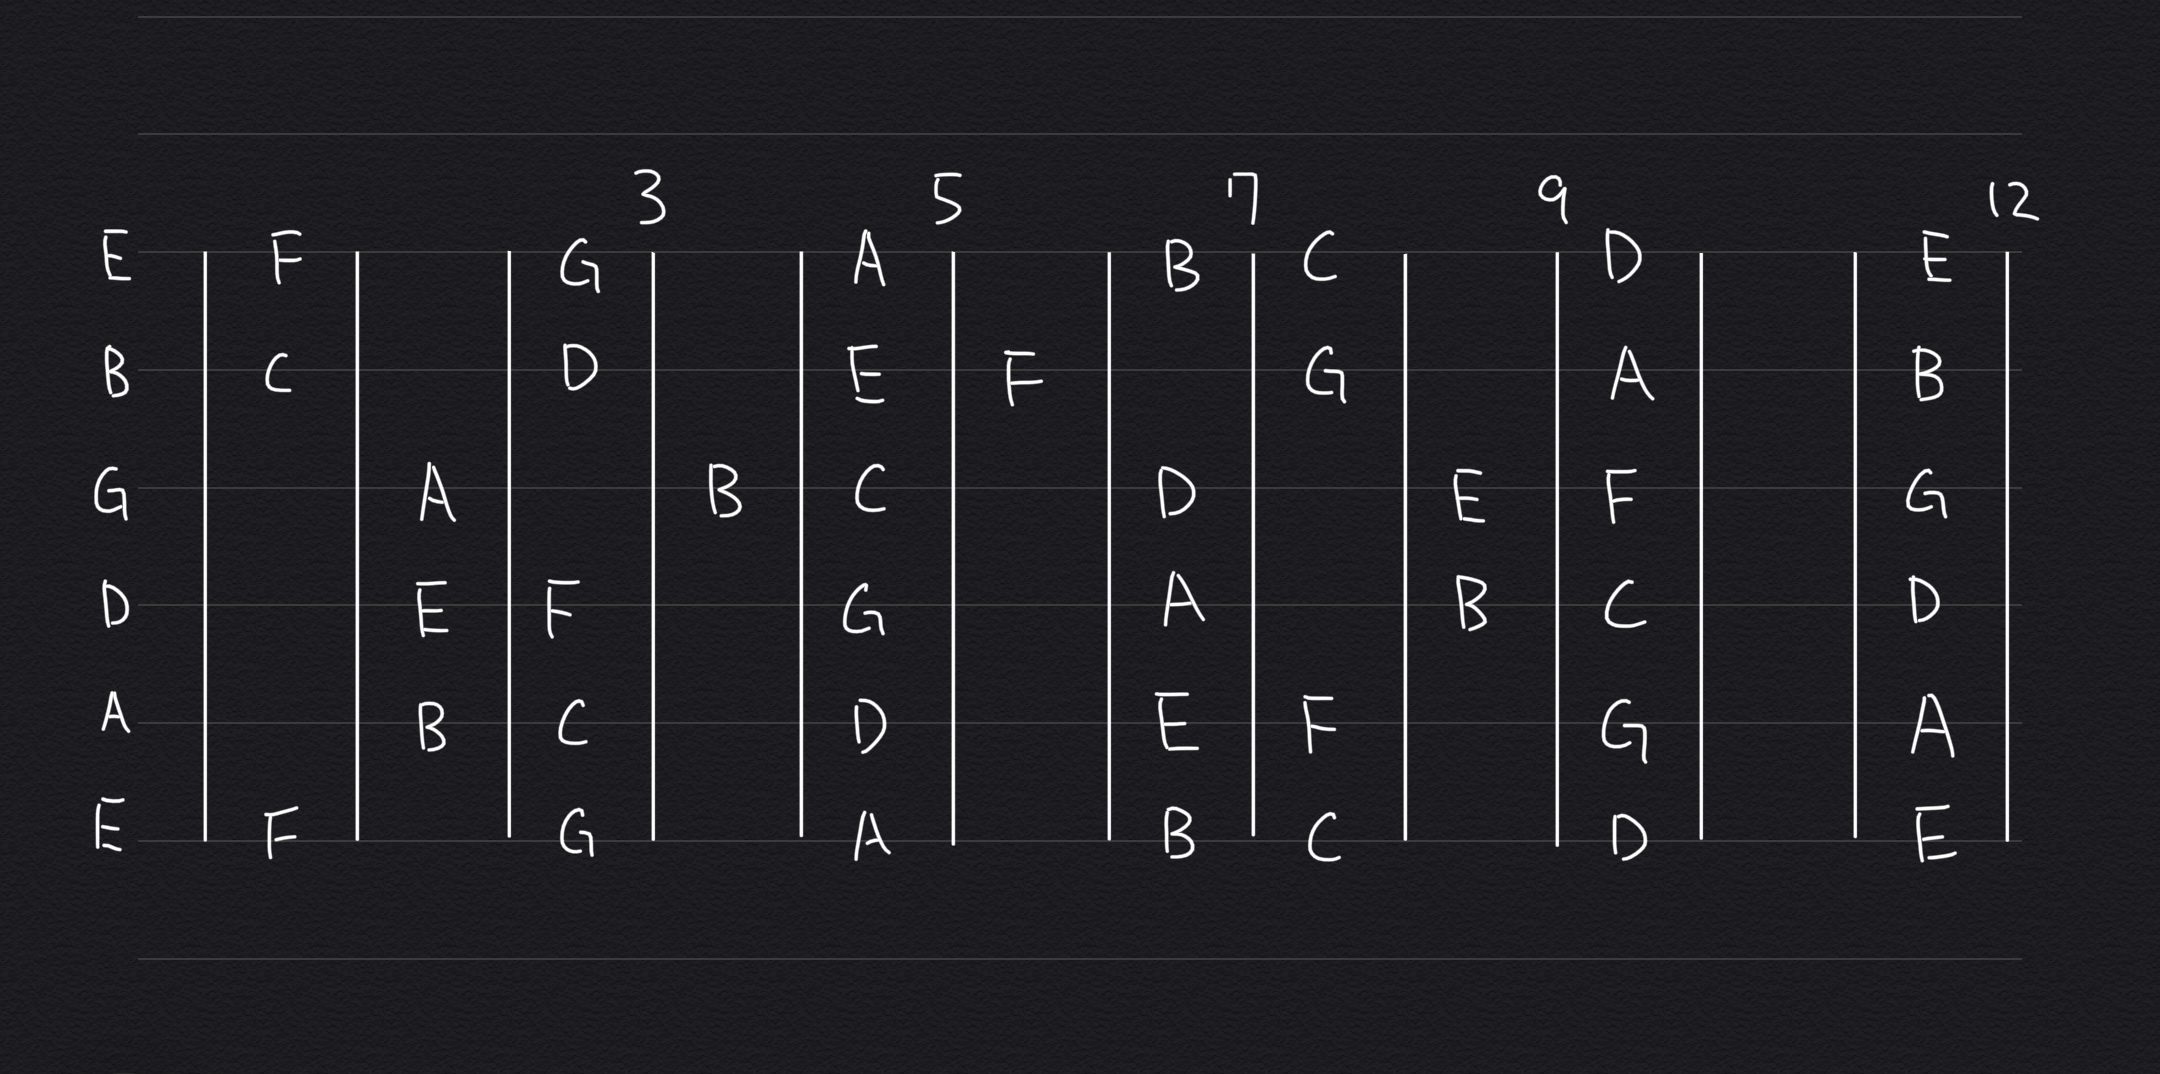 ギターの音を覚える コードの色んな押さえ方を見つけるための表 0と1